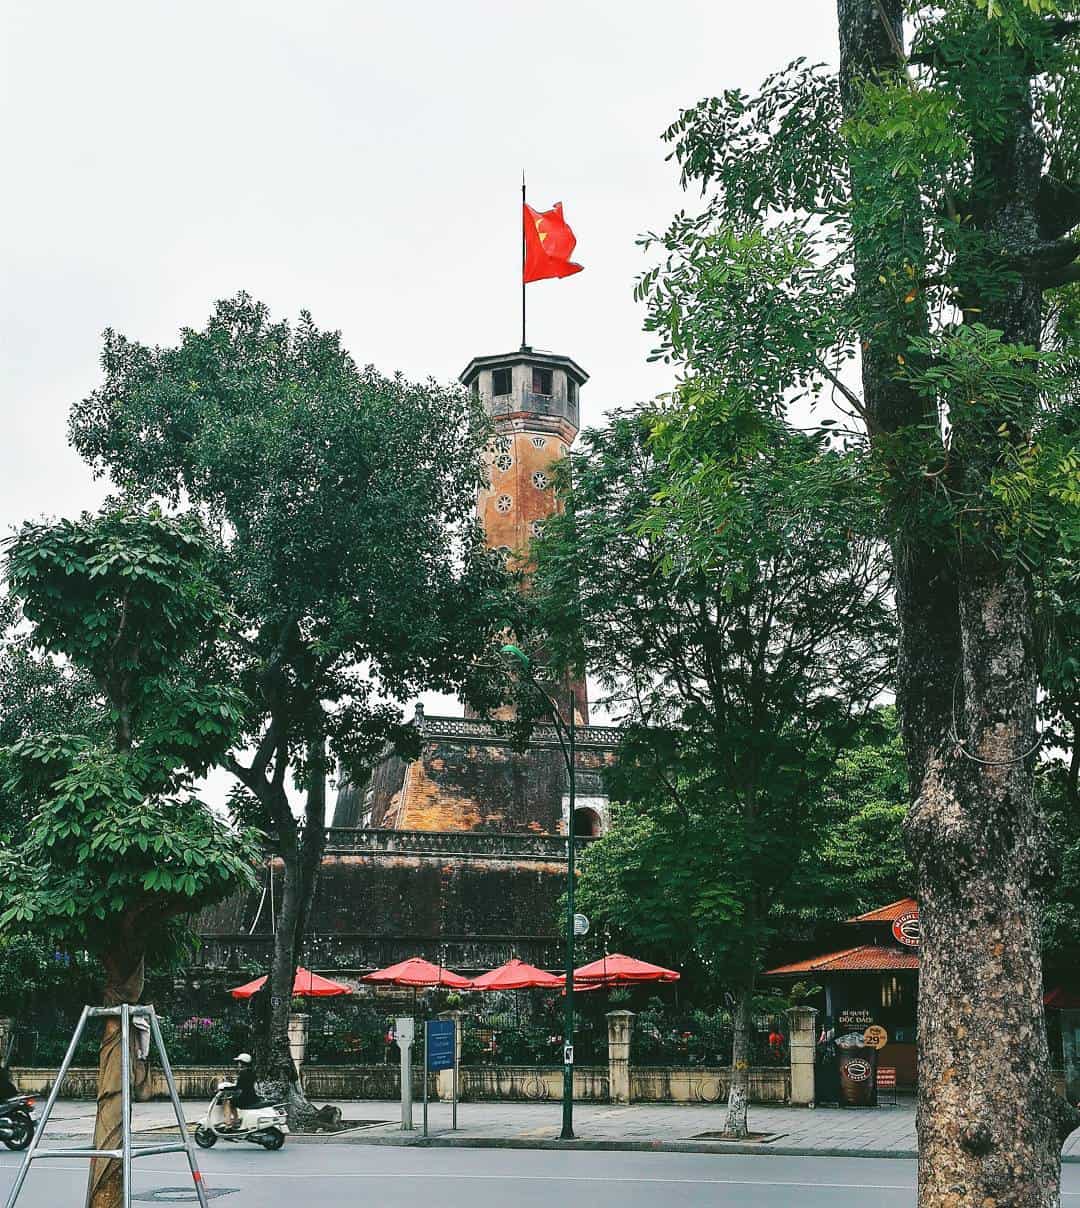 Cột cờ Hà Nội 